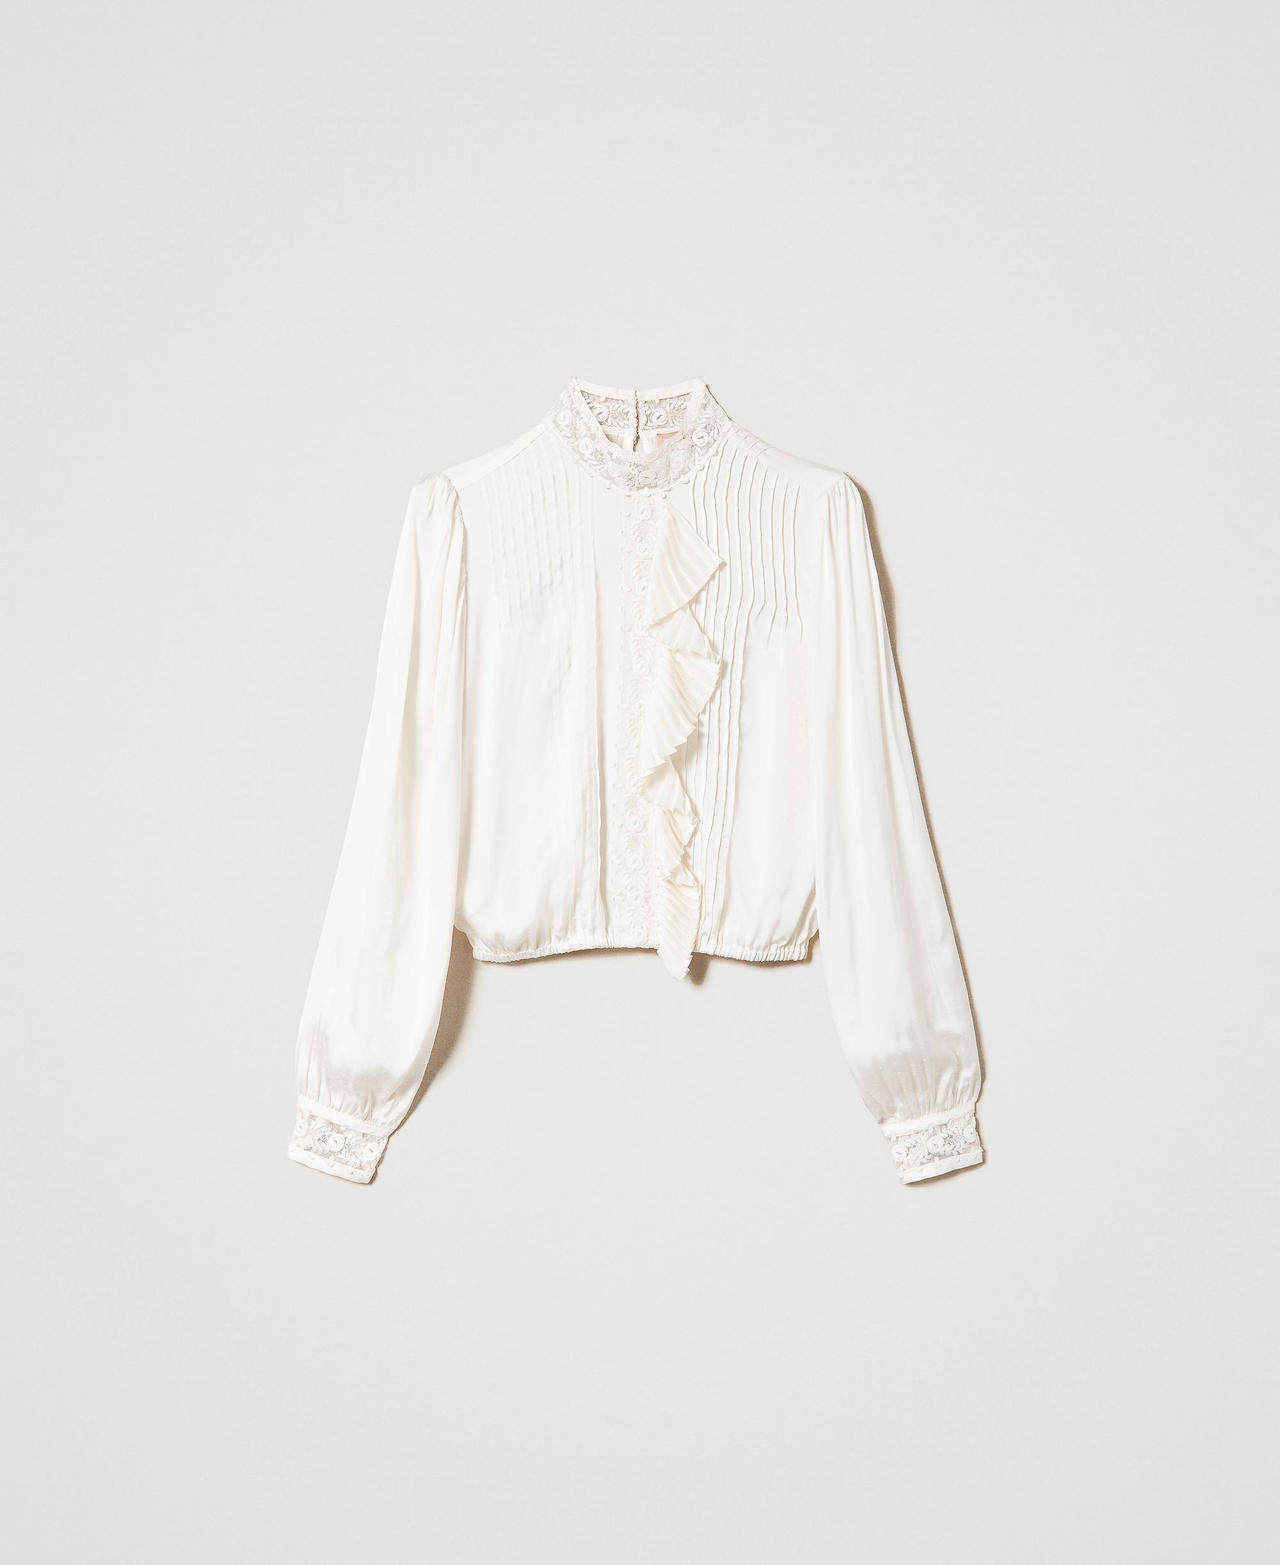 Жаккардовая блузка с кружевом и оборками Белый Снег женщина 232TT2170-0S